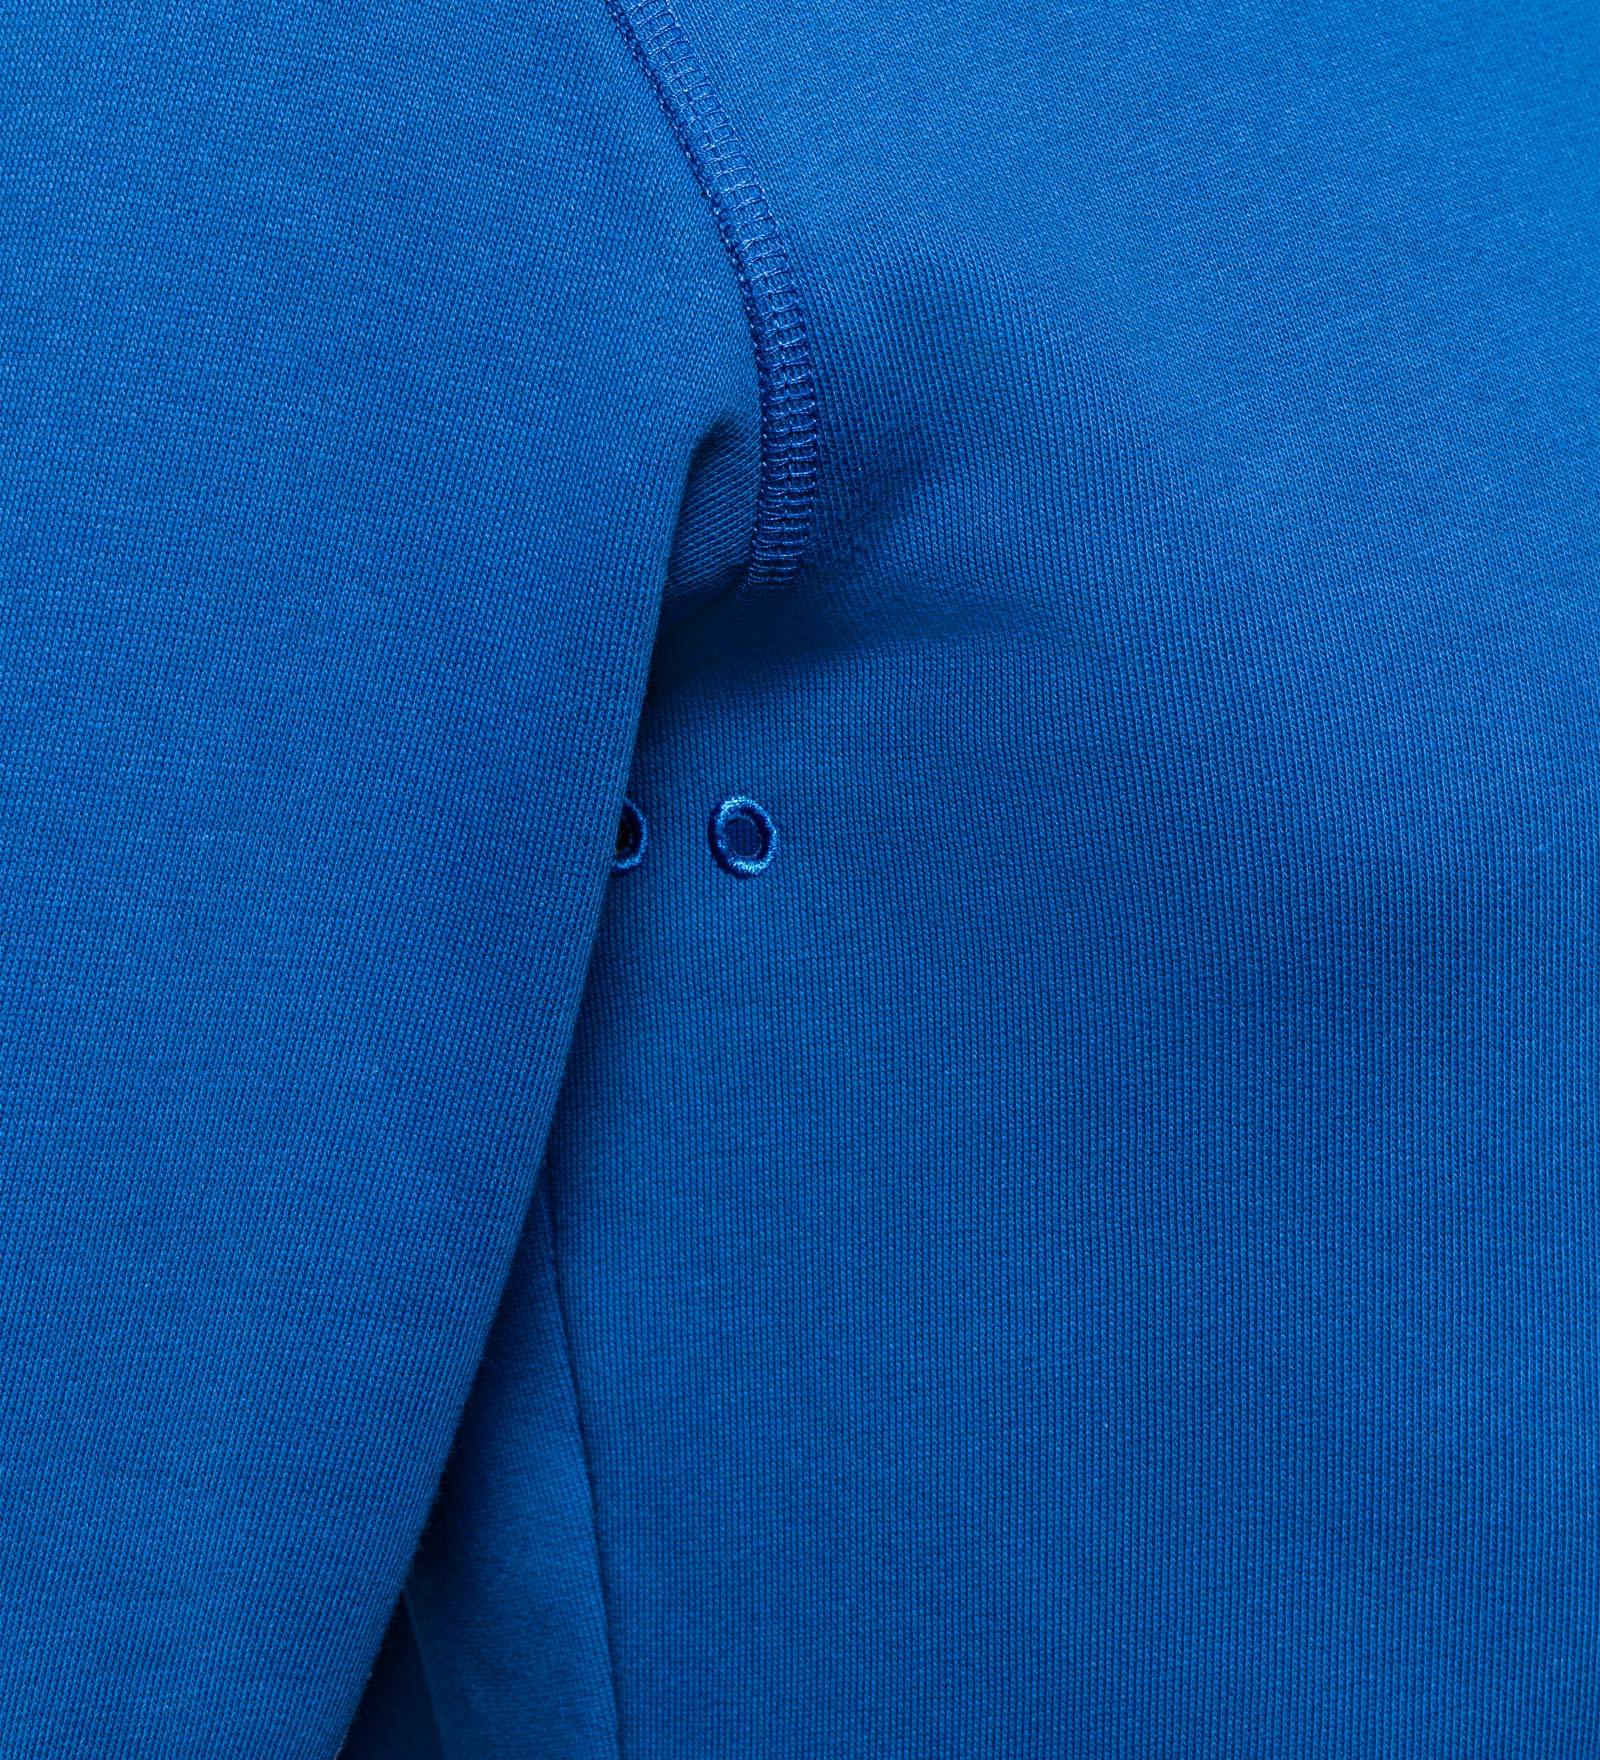 CODE-ZERO Sweatshirt Men Upwind Blue CODE-ZERO XXL 